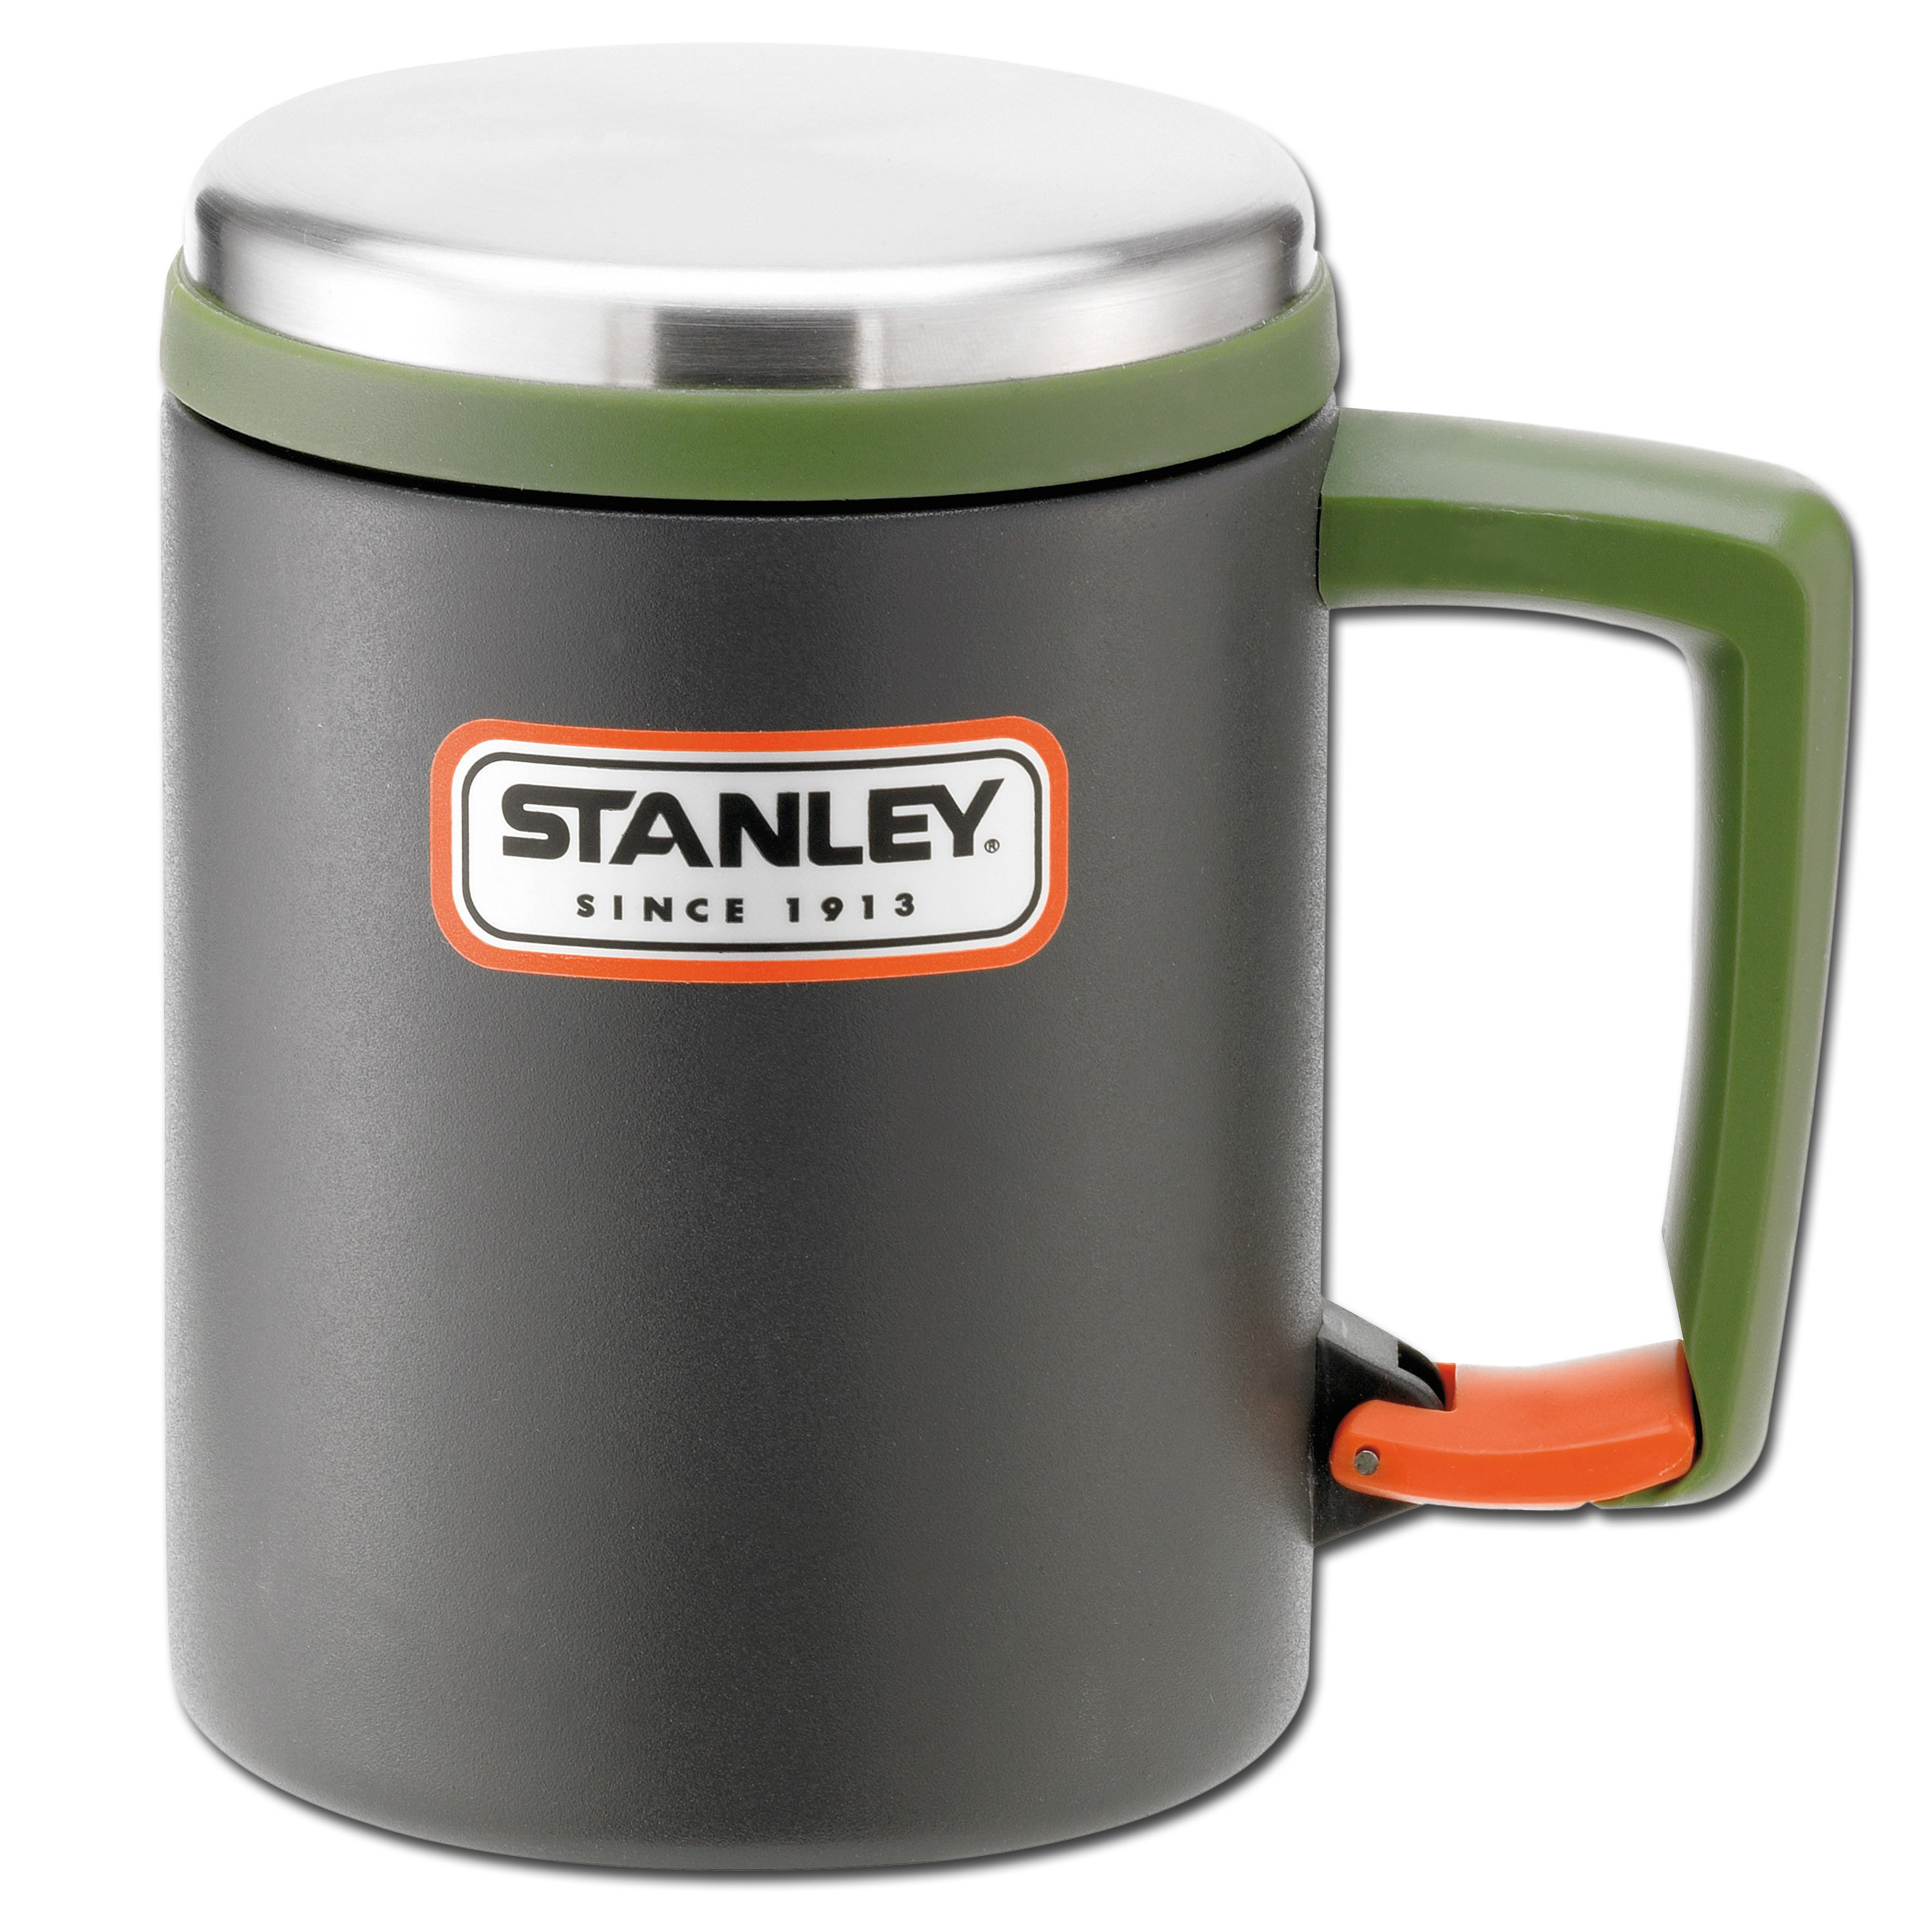 Vintage Stanley thermos - Drinkware - Grain Valley, Missouri